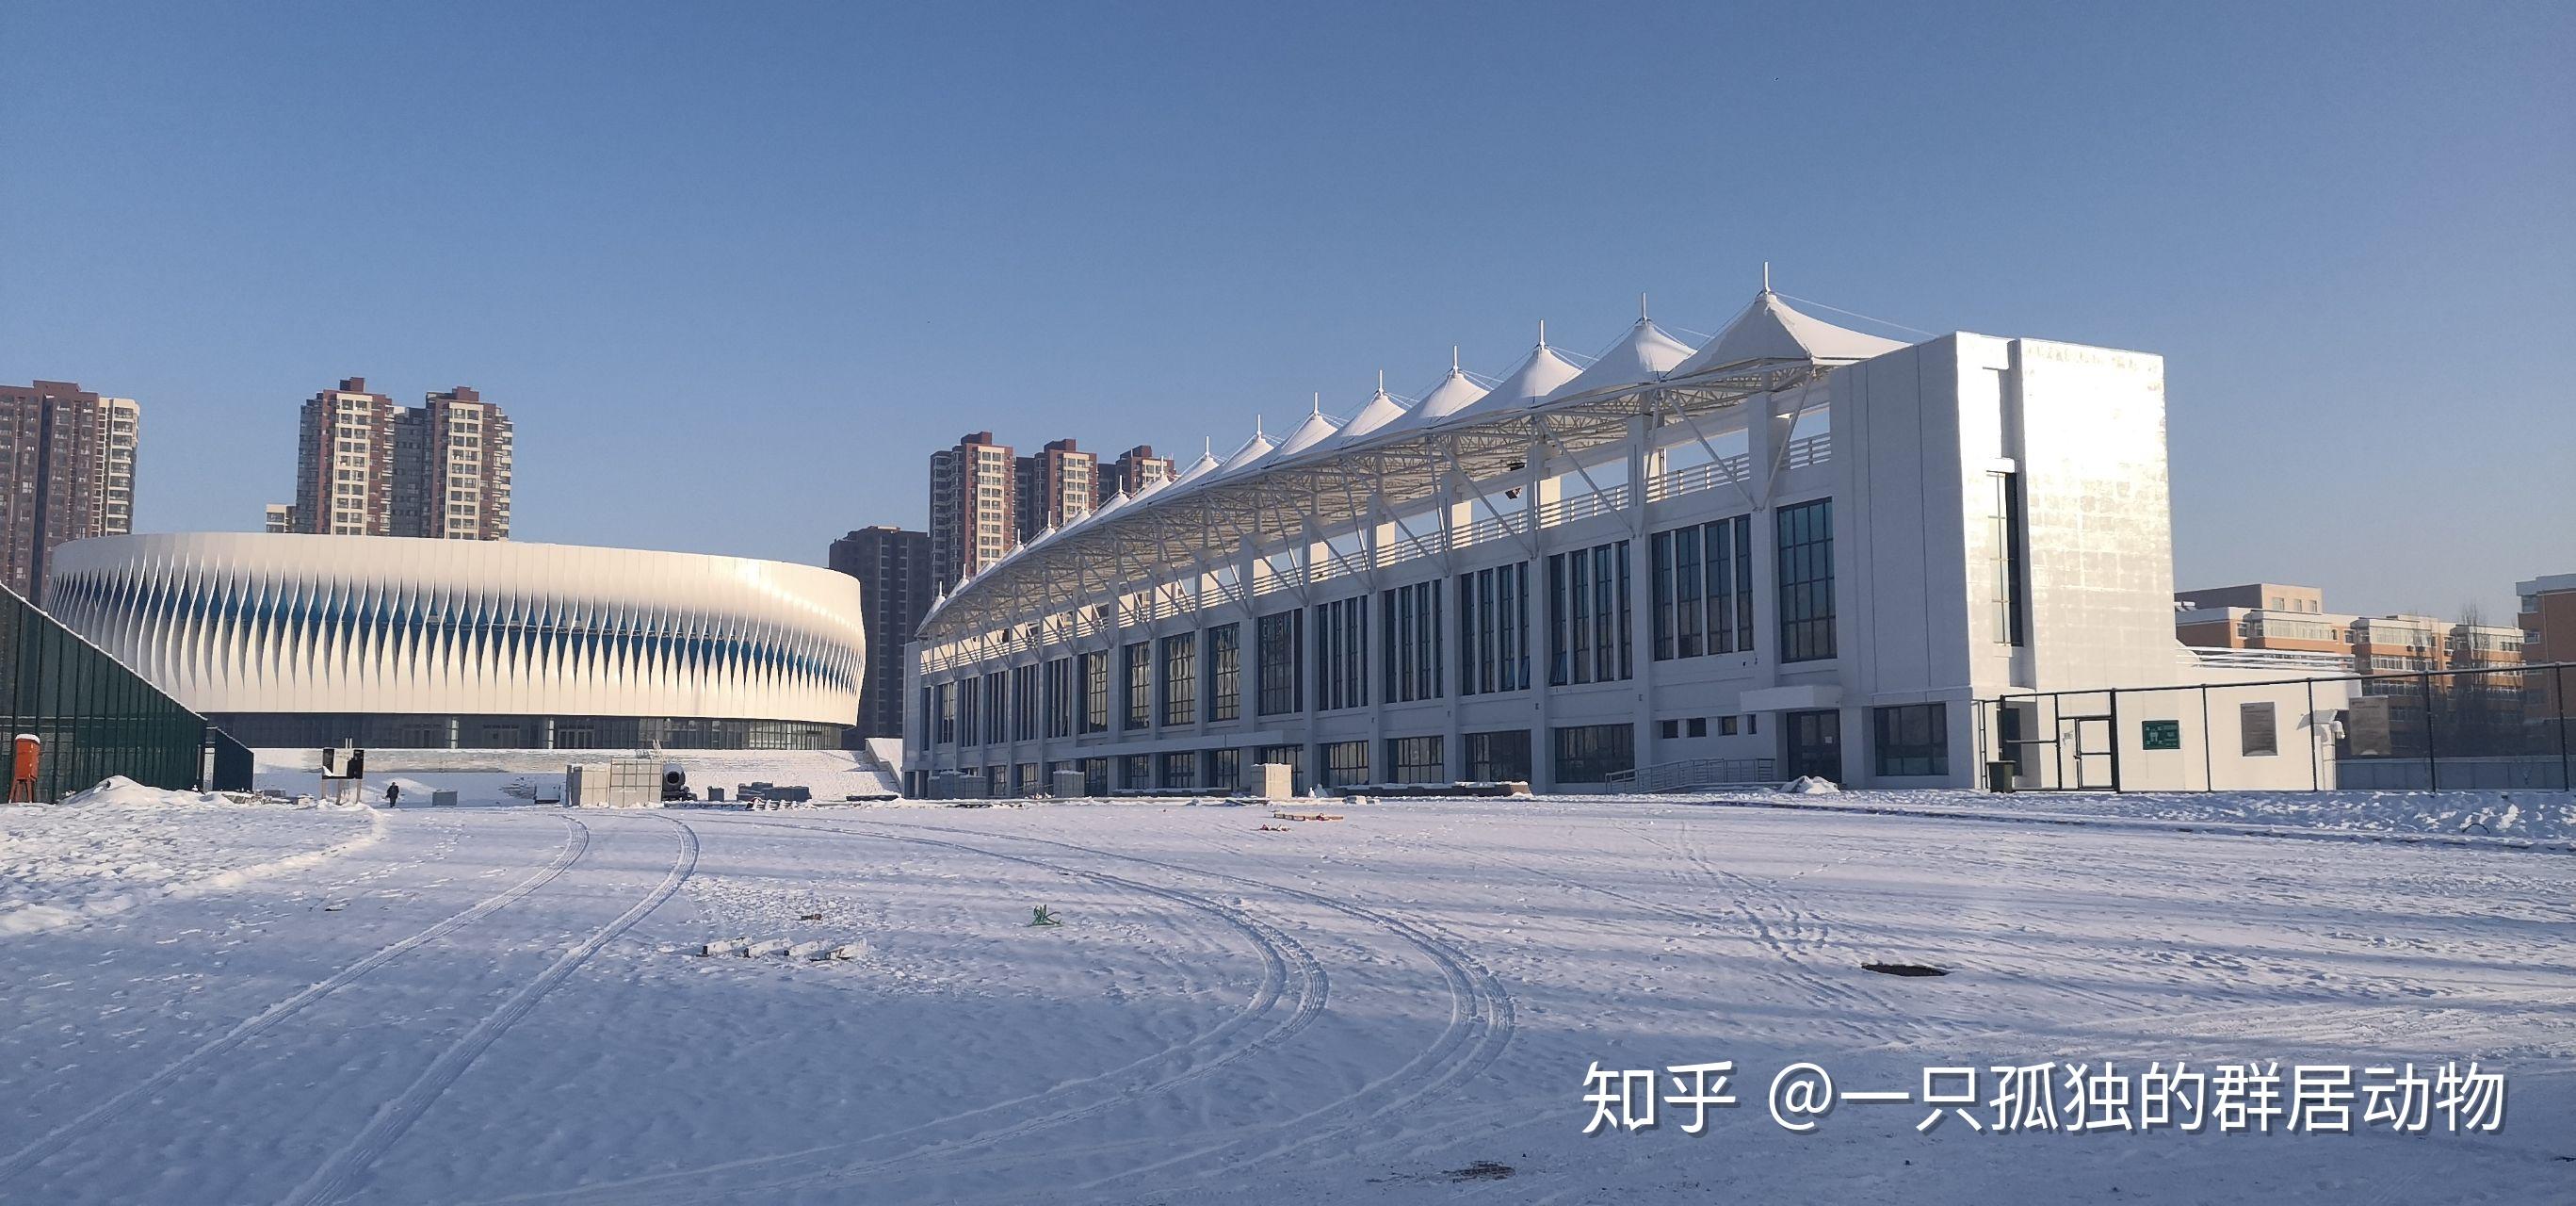 北京中医药大学东方学院和河北北方学院哪个比较好?